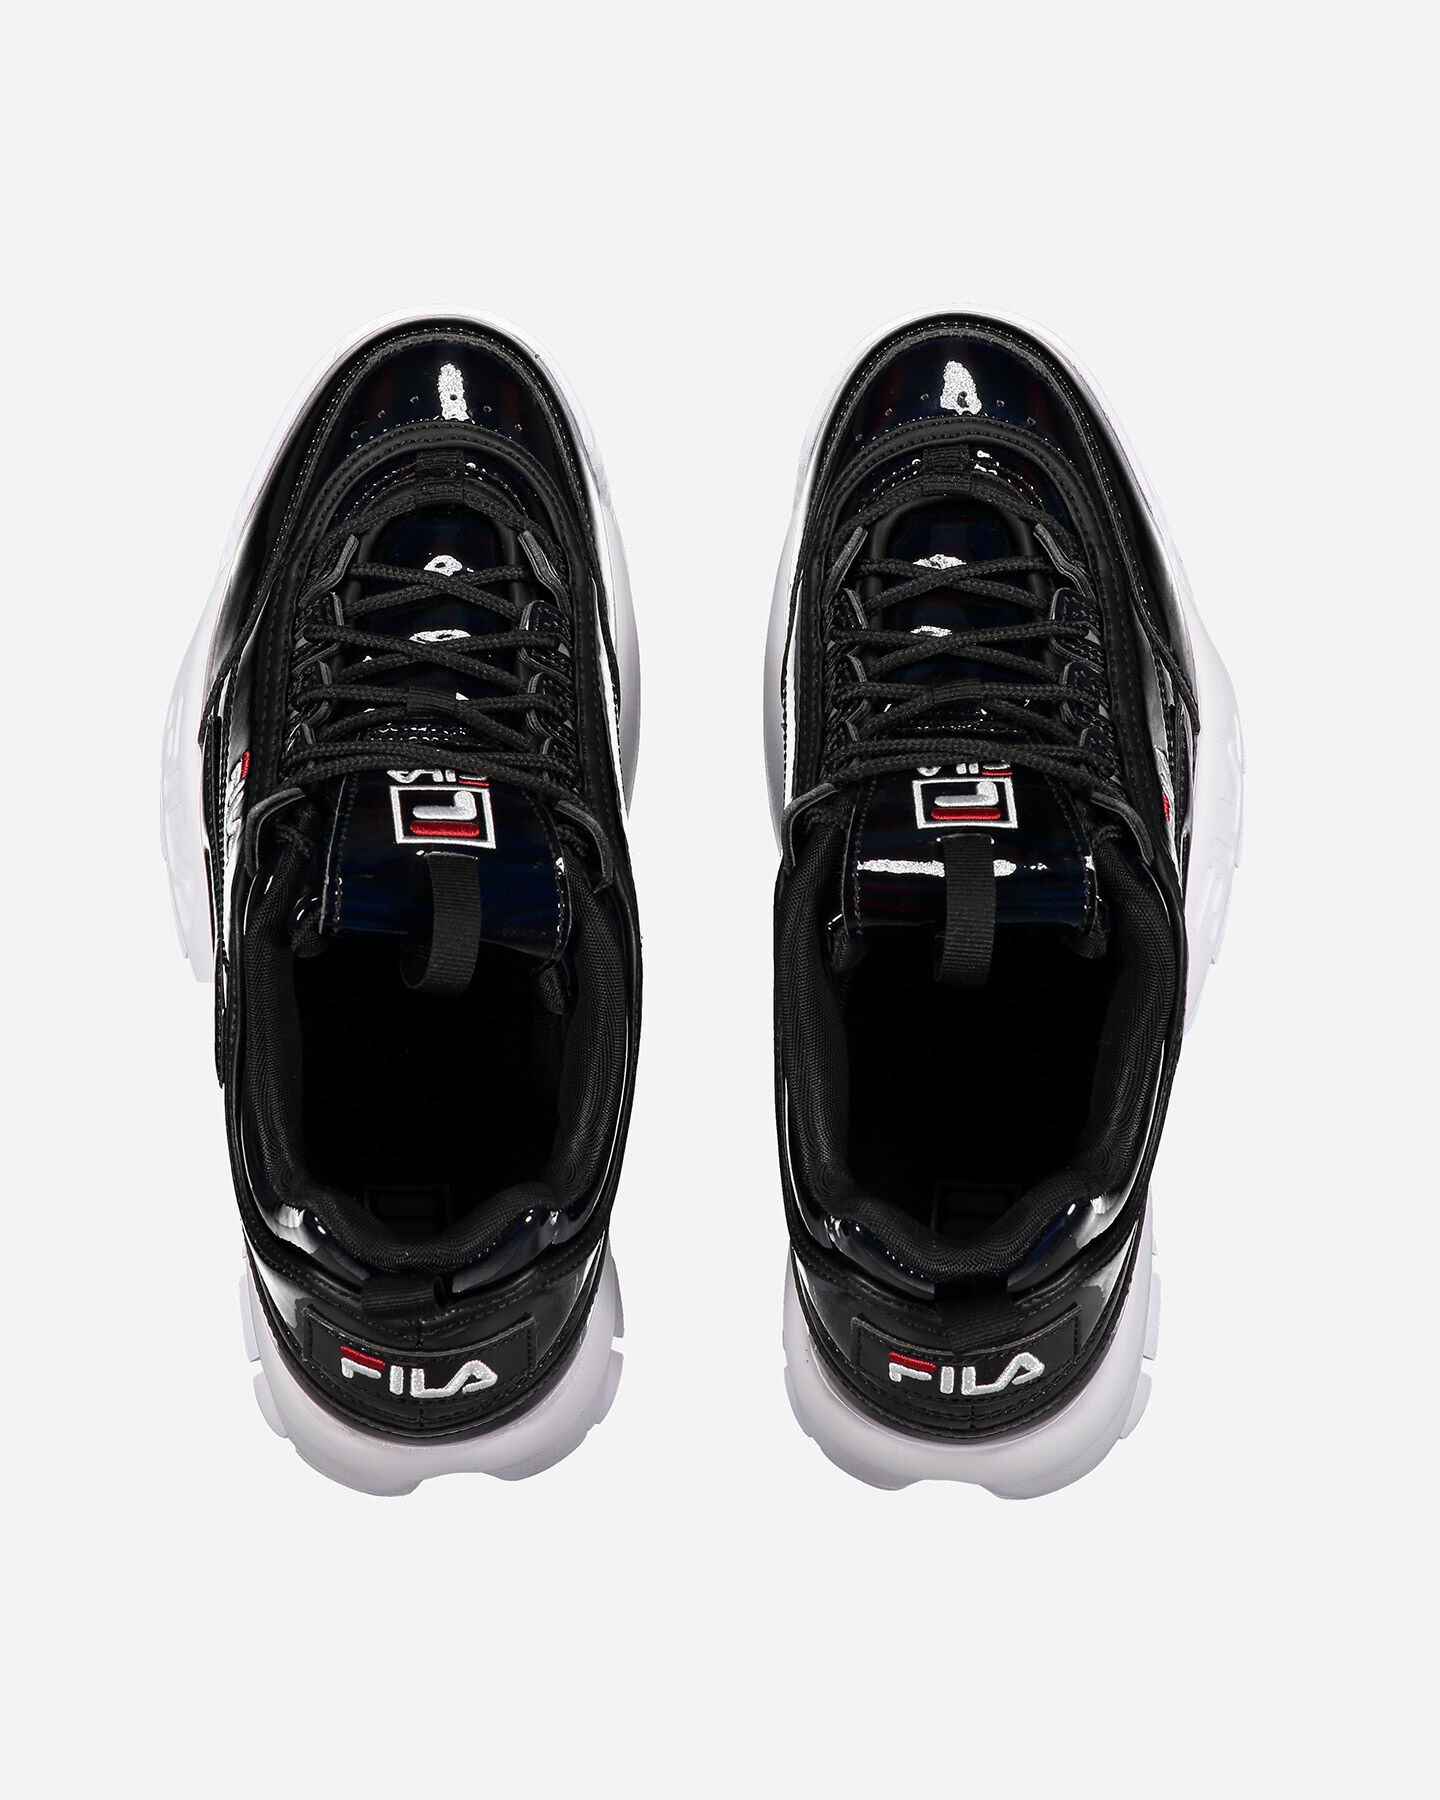  Scarpe sneakers FILA DISRUPTOR GS JR S4089257|16Y|4 scatto 3